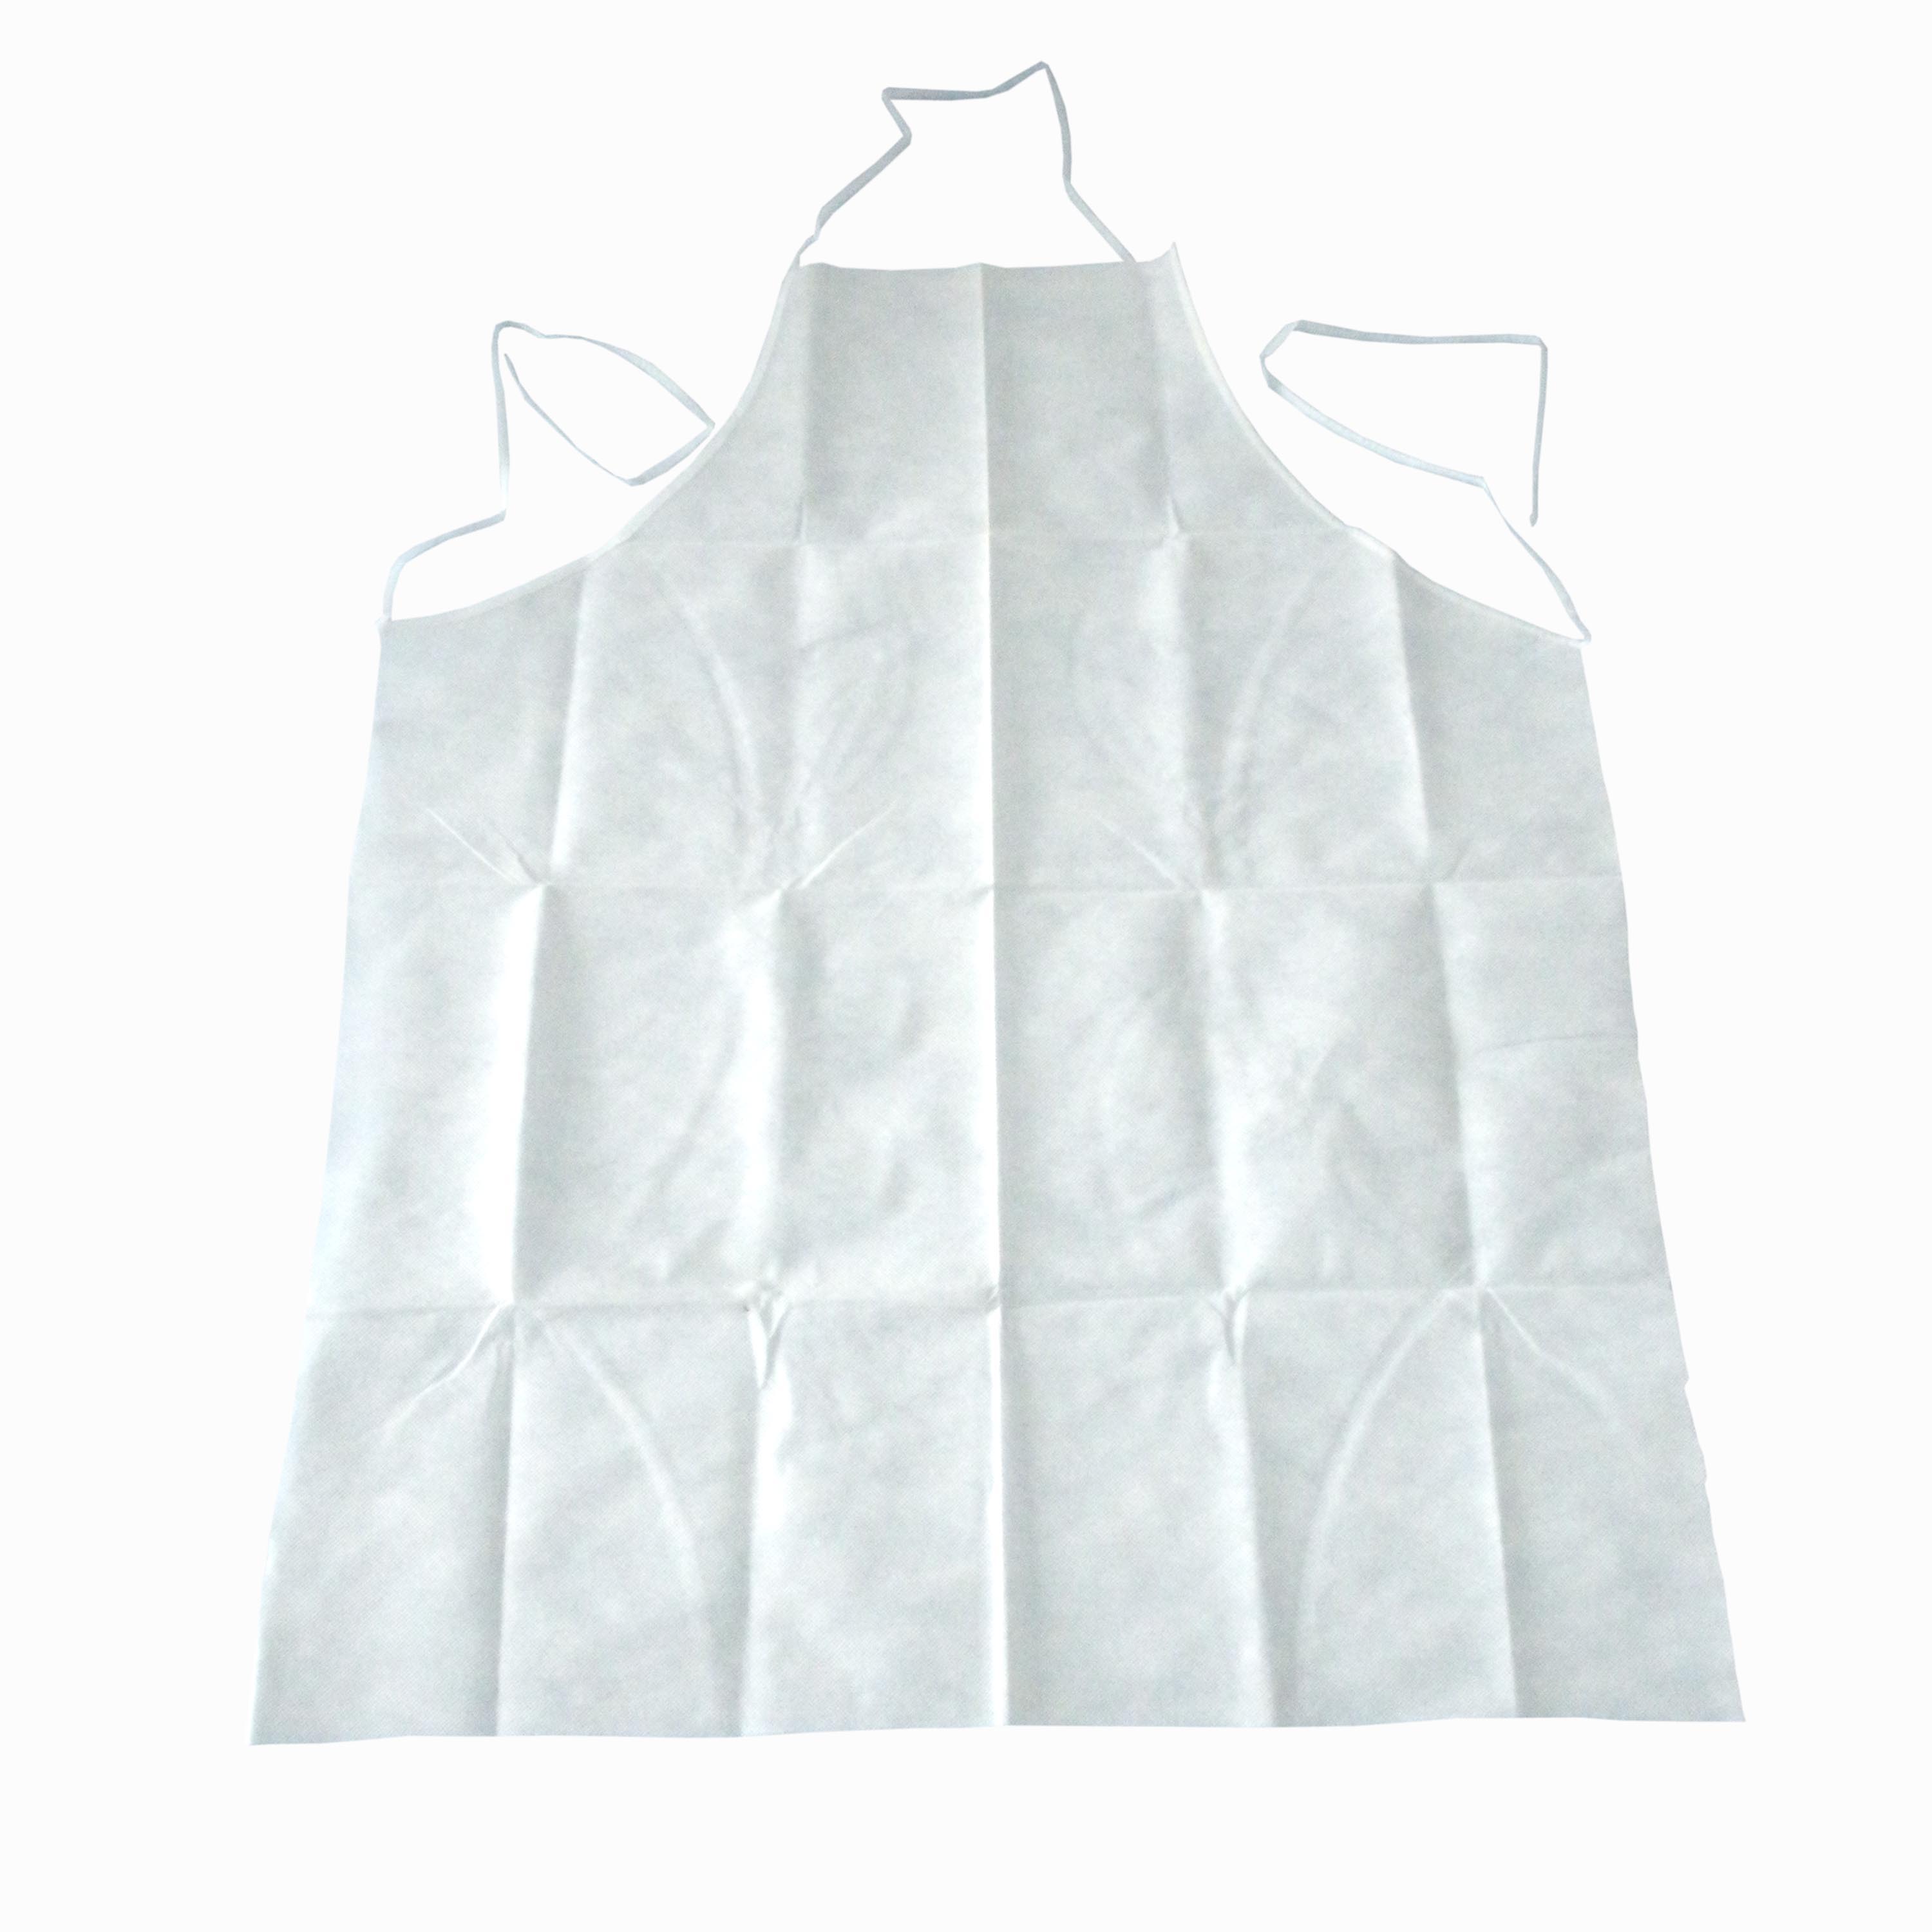 Disposable plastic transparent PE apron 